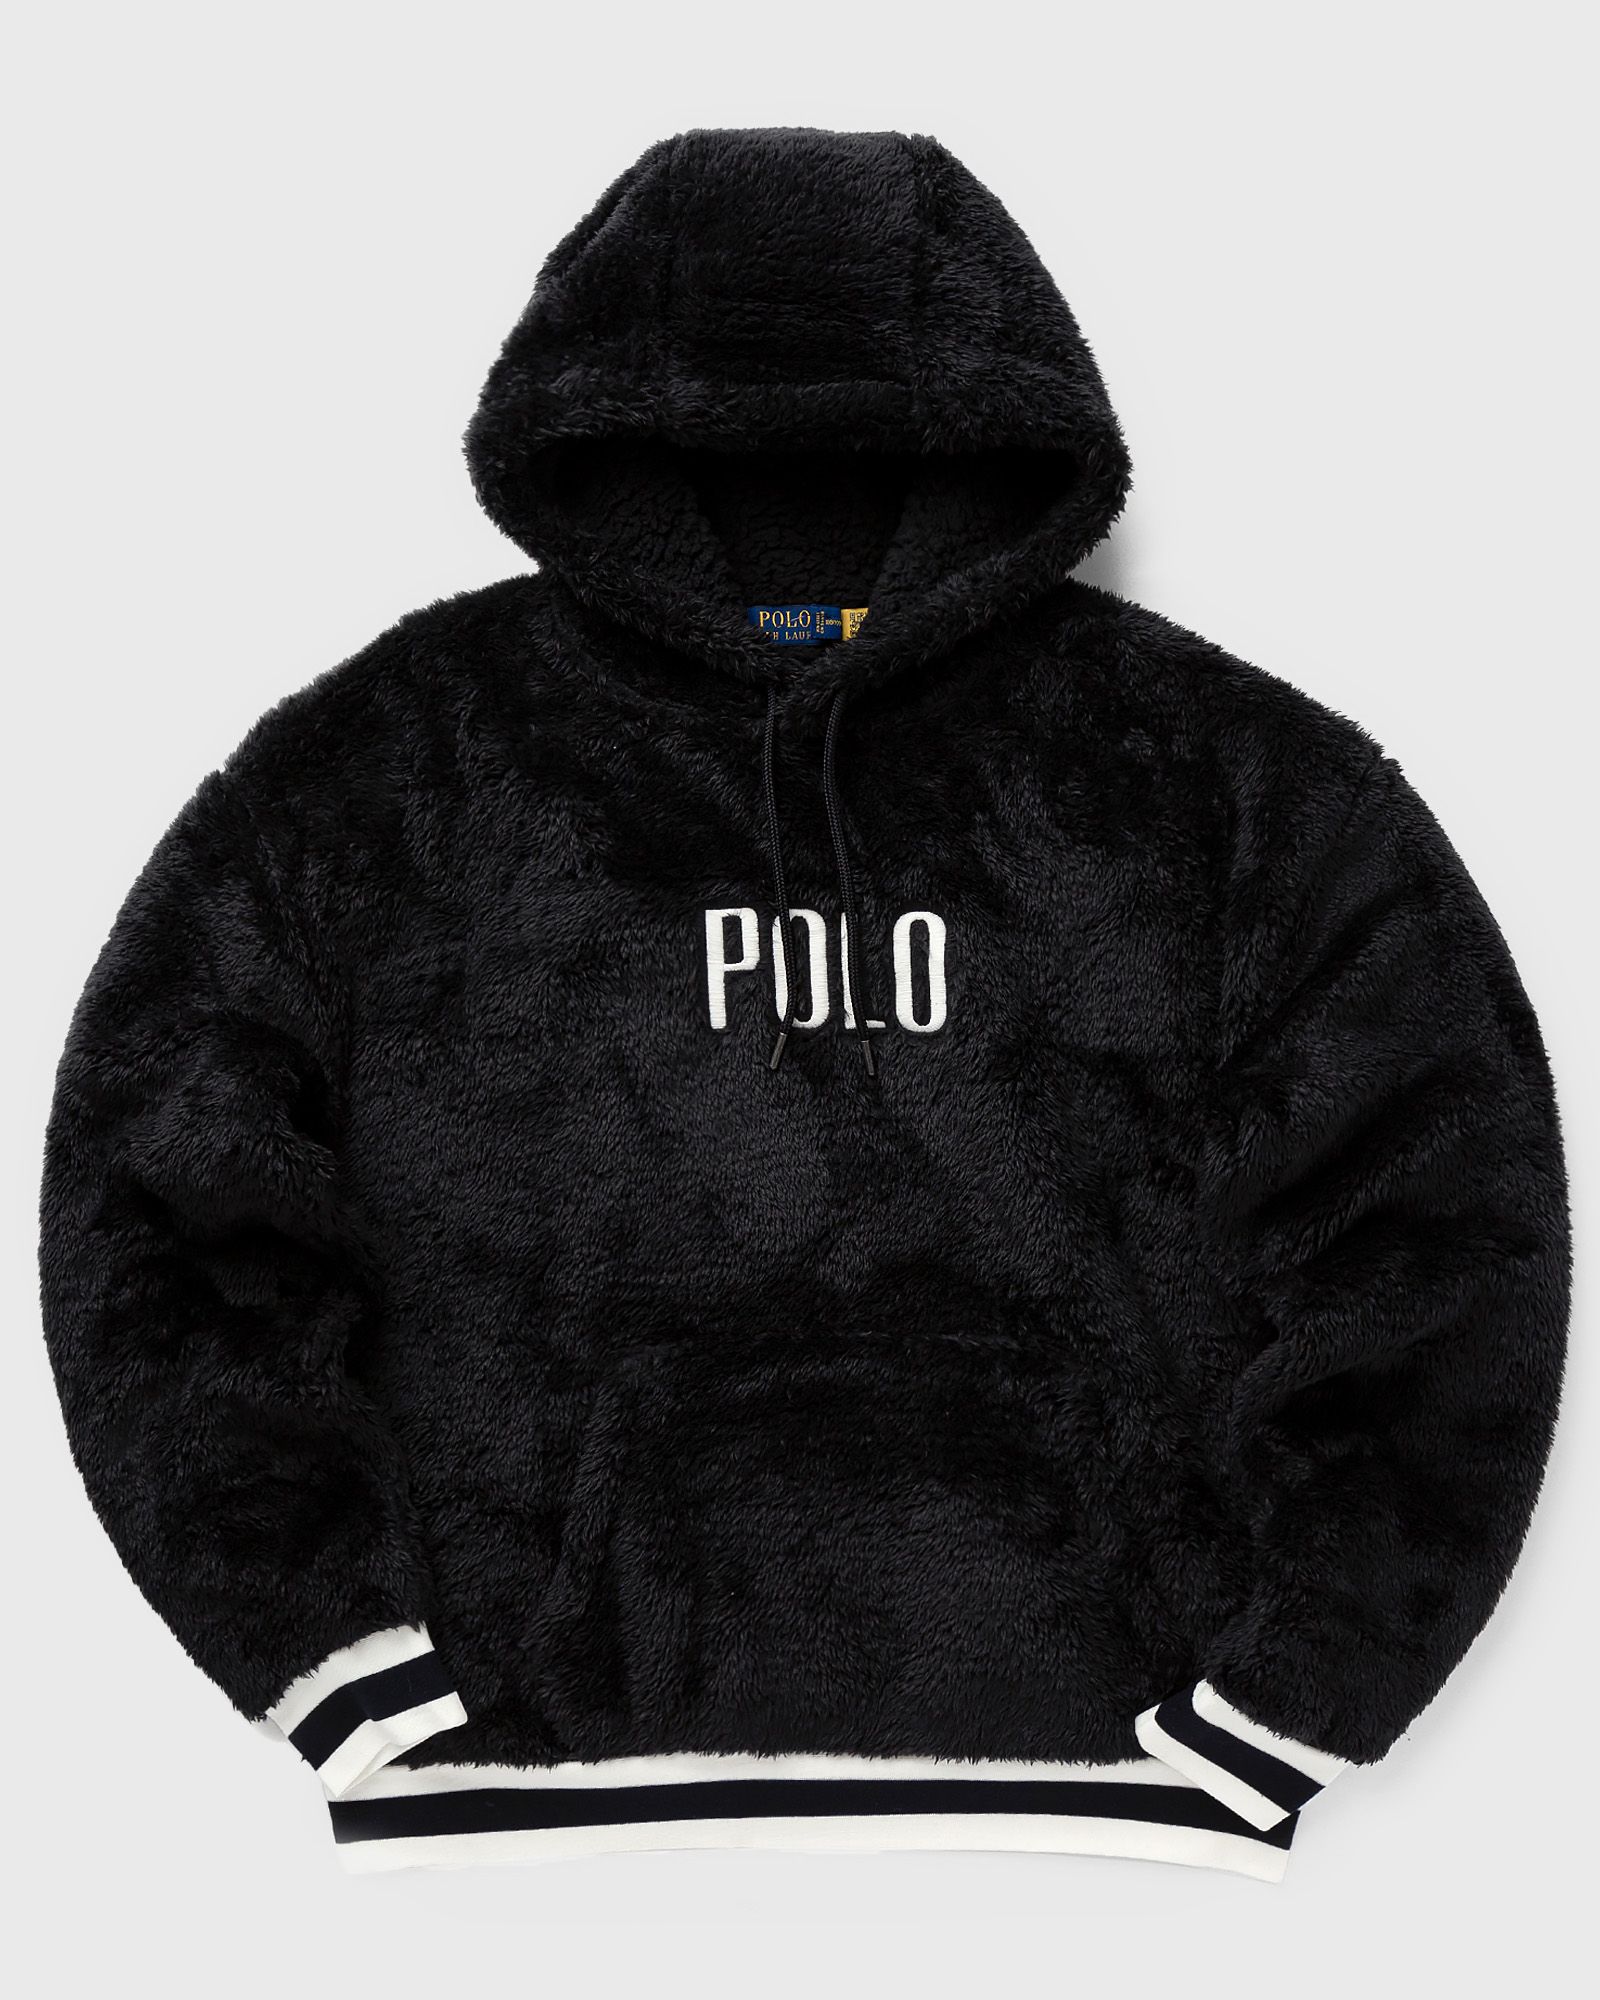 Polo Ralph Lauren POHOODM1-LONG SLEEVE-SWEATSHIRT men Hoodies black in Größe:XL von Polo Ralph Lauren